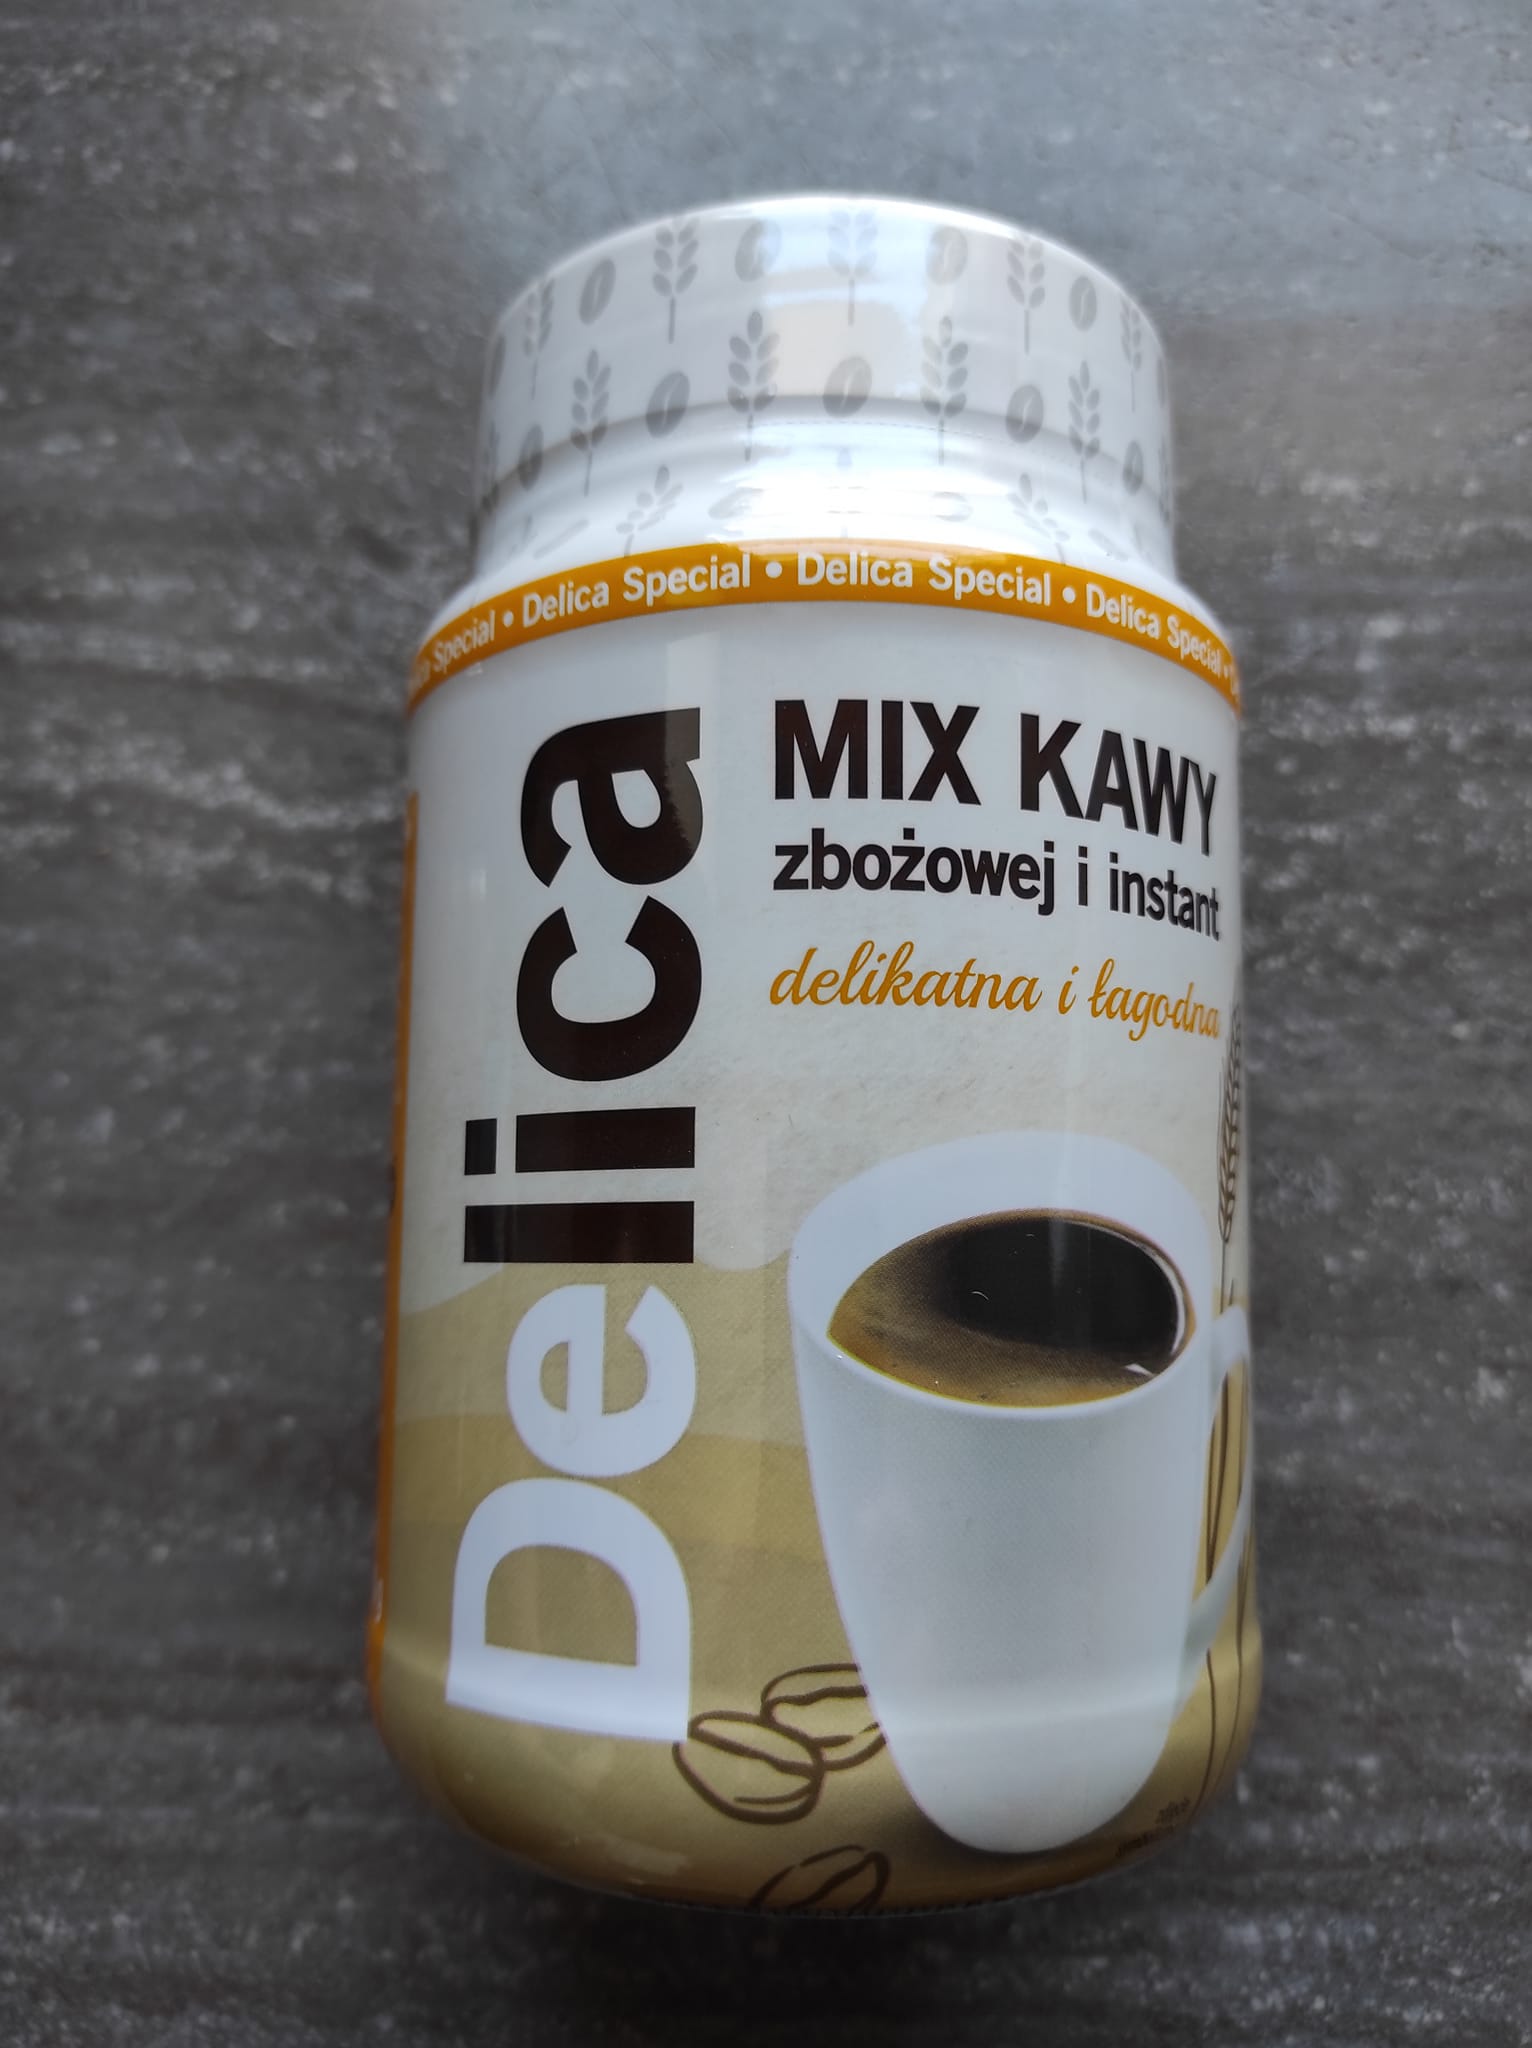 Kawa mix zbożowa i instant – Delica 4.5 (2)